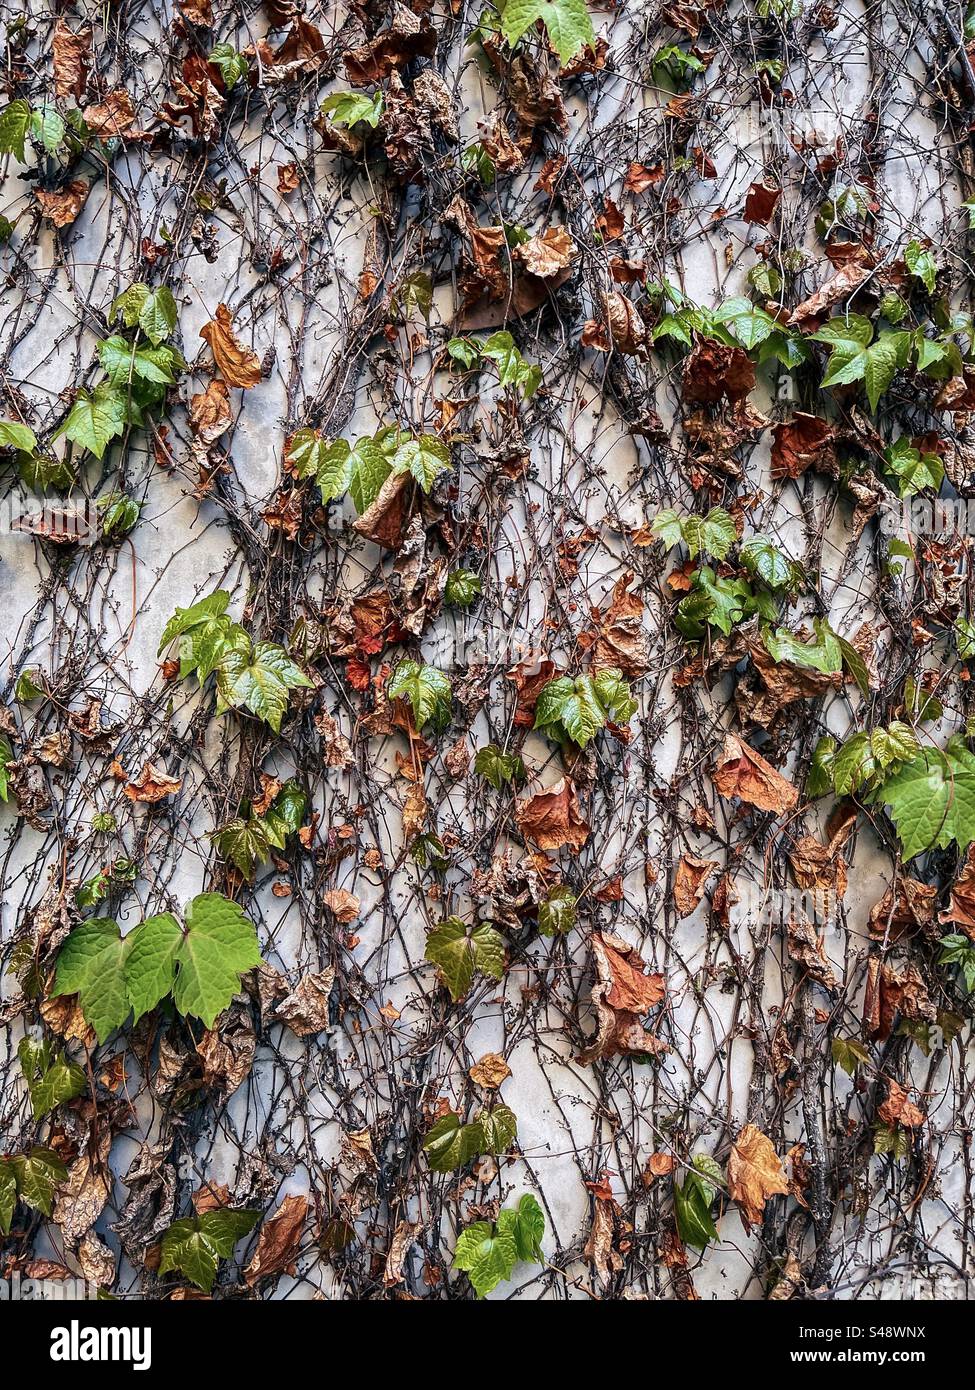 Gros plan de feuilles fraîches de lierre vert poussant à partir de tiges desséchées sèches sur un mur de béton blanc au printemps. Renouvellement. Fond abstrait plein cadre. Banque D'Images